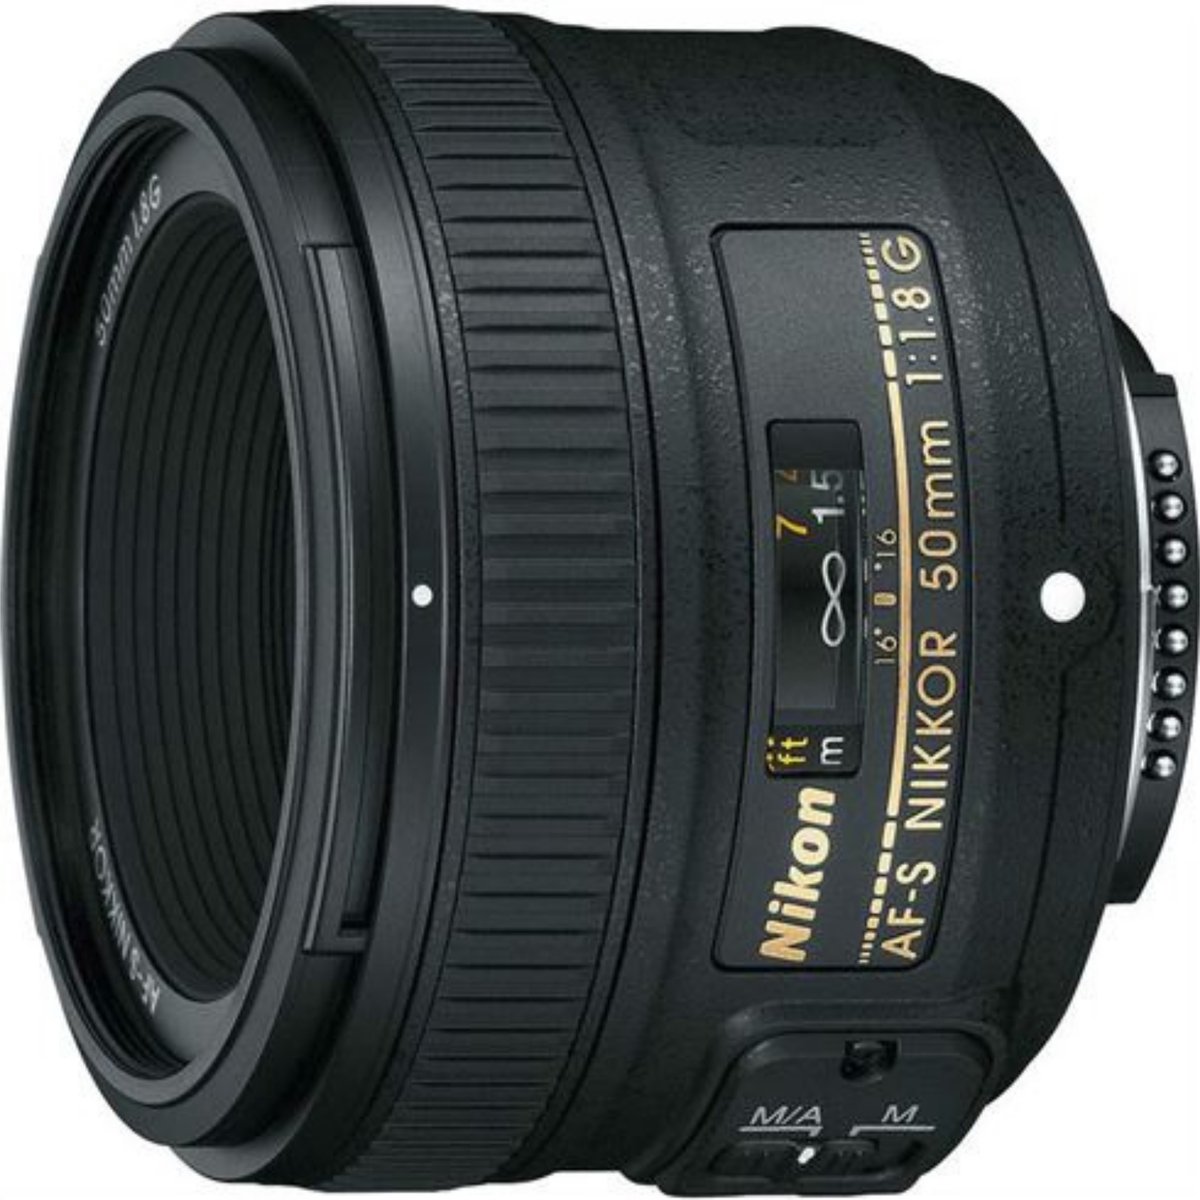 Nikon AF-S NIKKOR 50mm f/1.8G Lens - Camera Lens voor Portret Fotografie